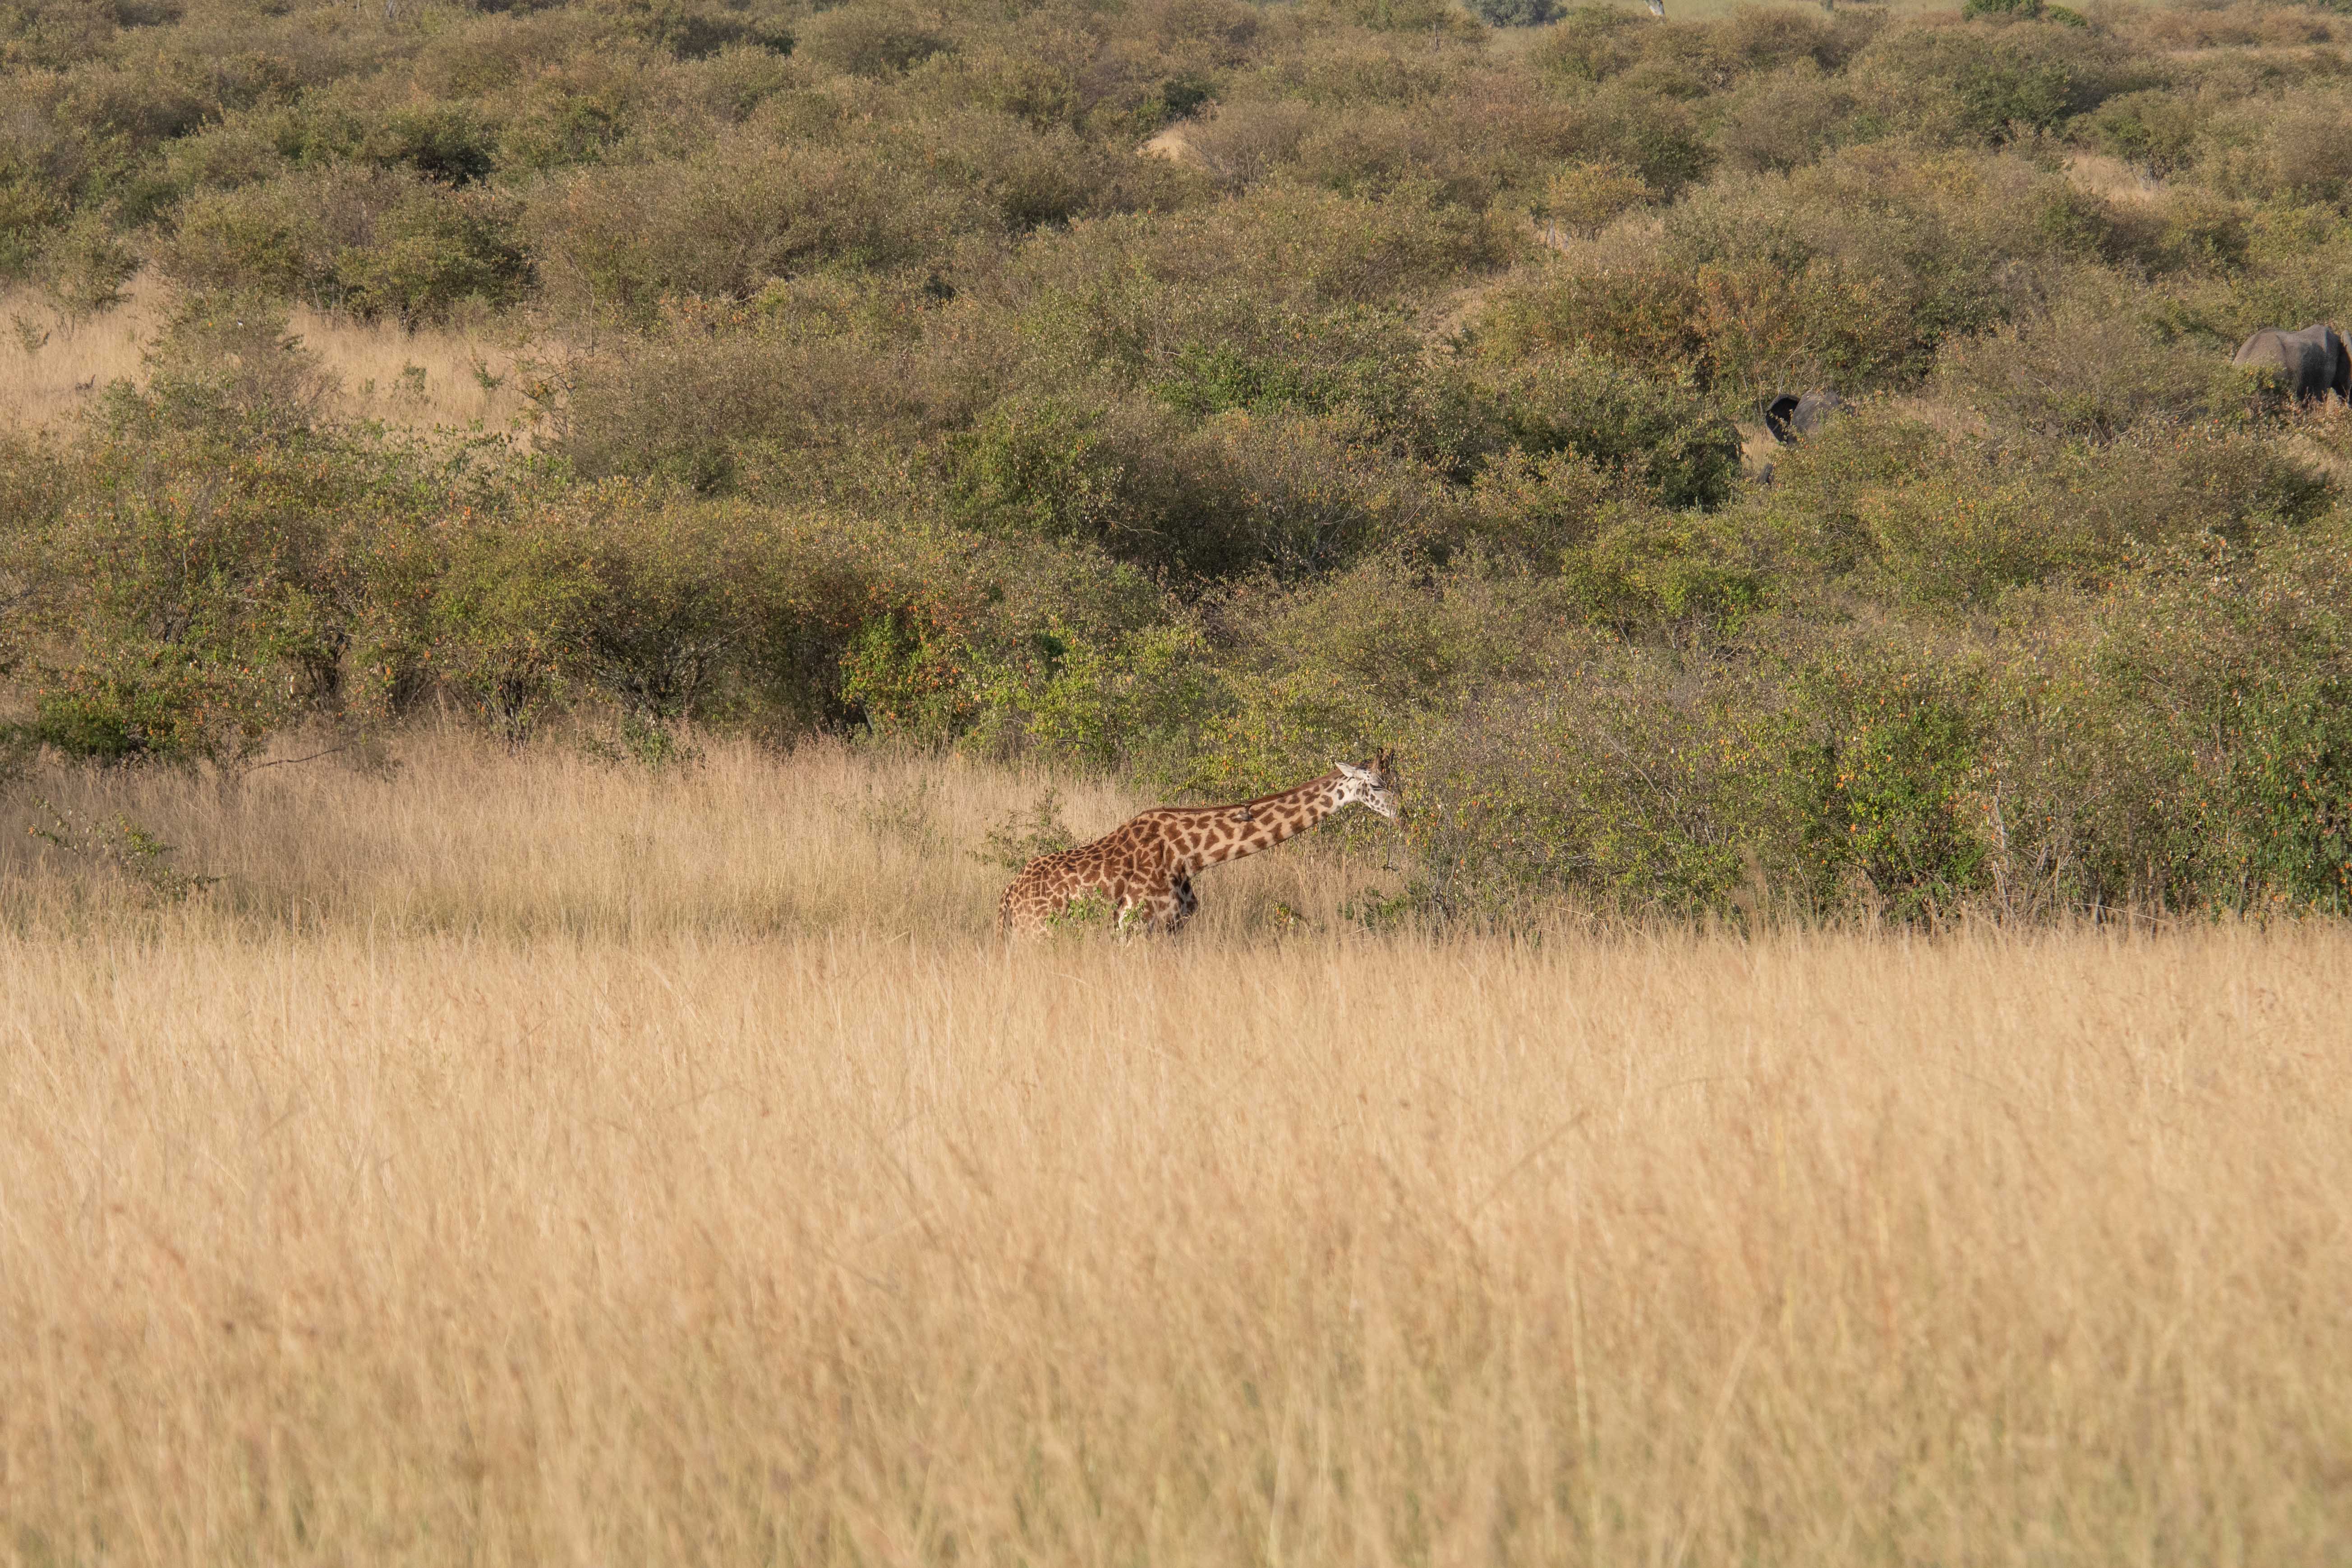 Masai Mara-20.jpg